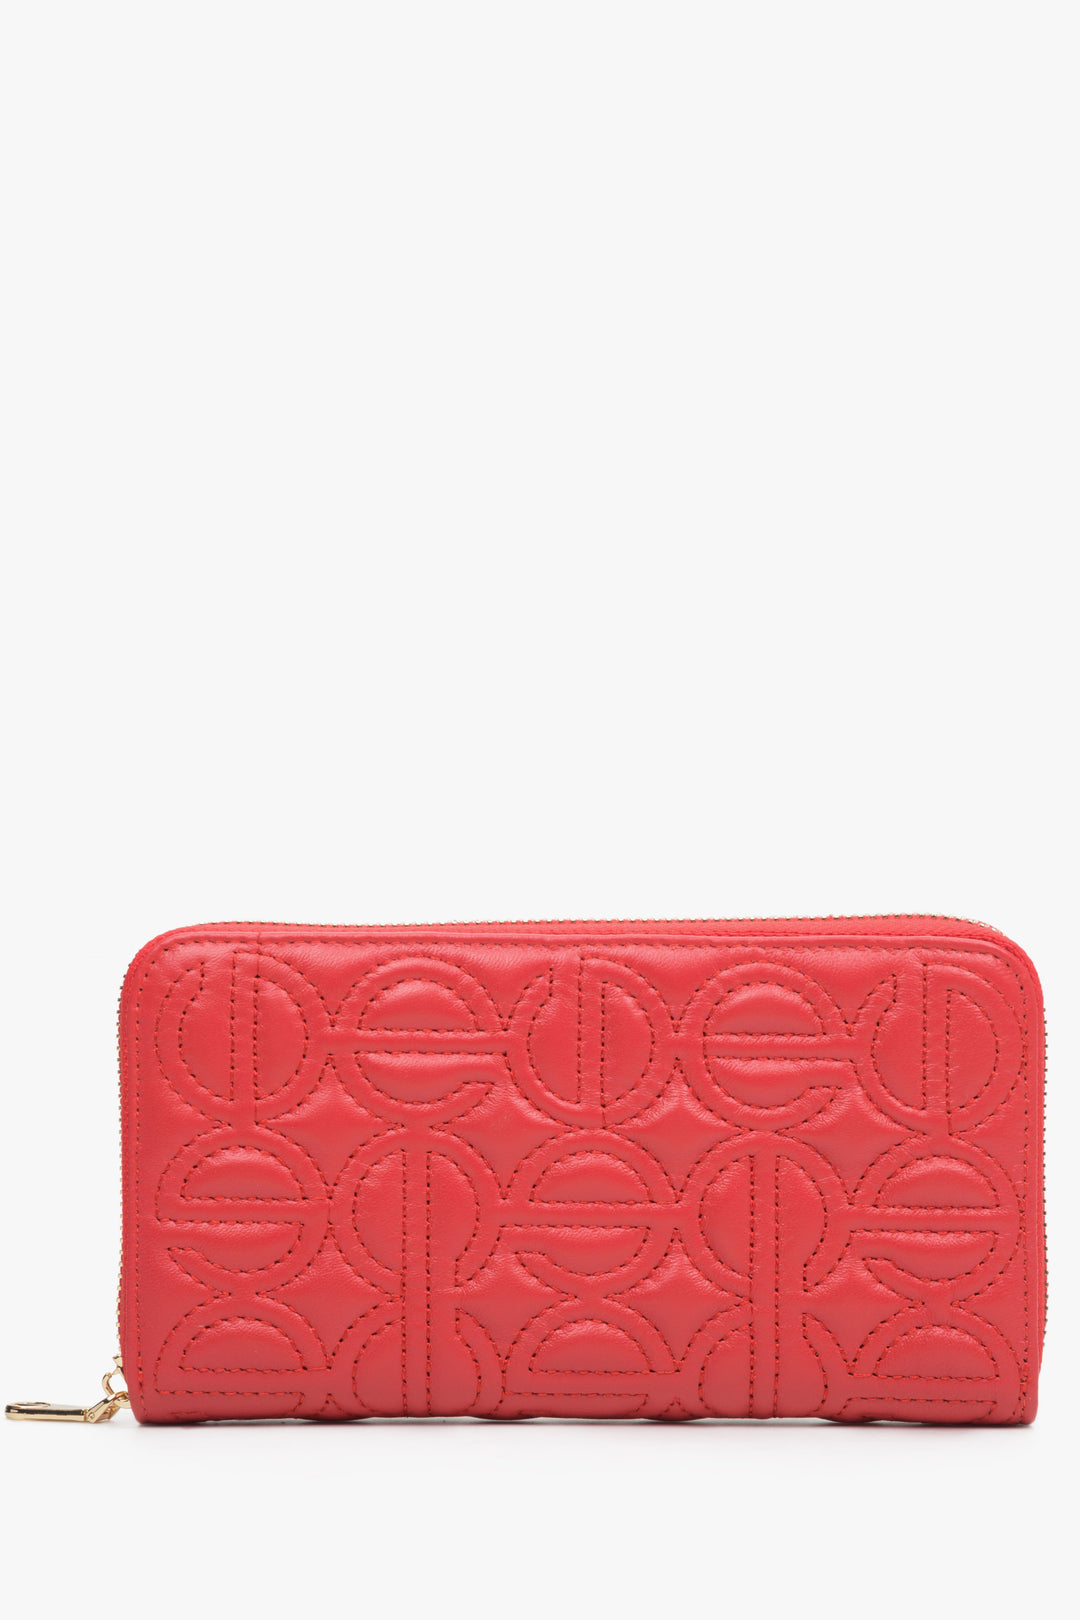 Duży, czerwony portfel damski z suwakiem marki Estro.